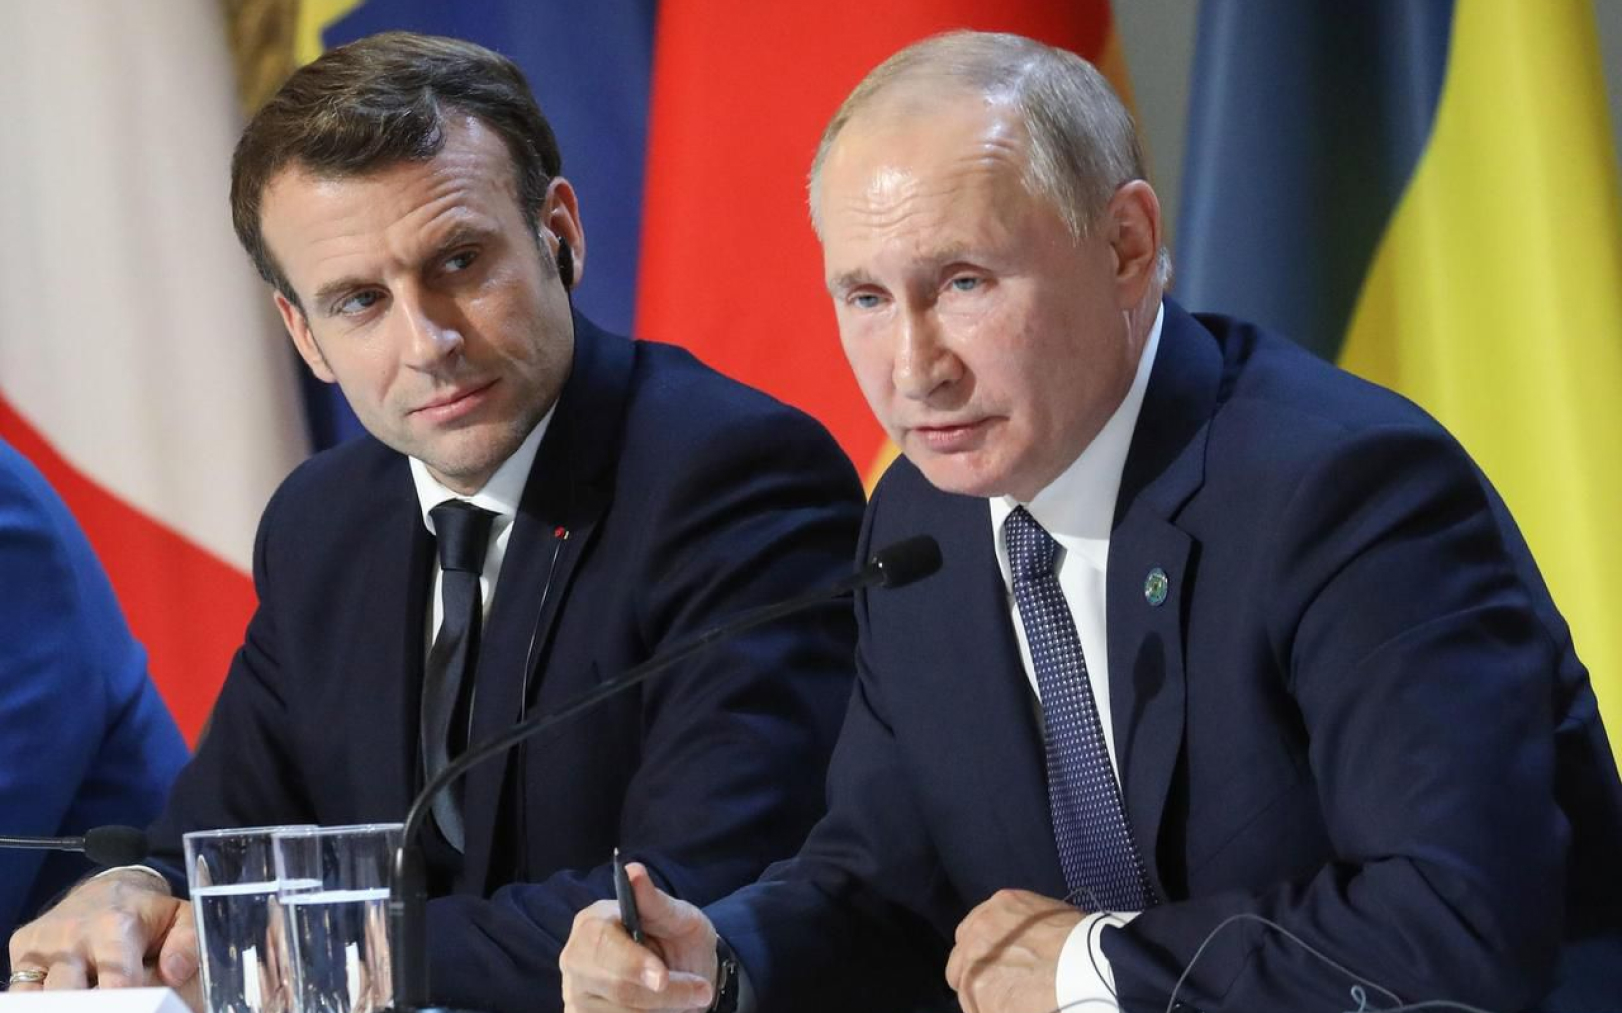 Le président français Emmanuel Macron et son homologue russe Vladimir Poutine en conférence de presse après un sommet sur l’Ukraine à l’Élysée, en 2019. AFP/Ludovic Marin